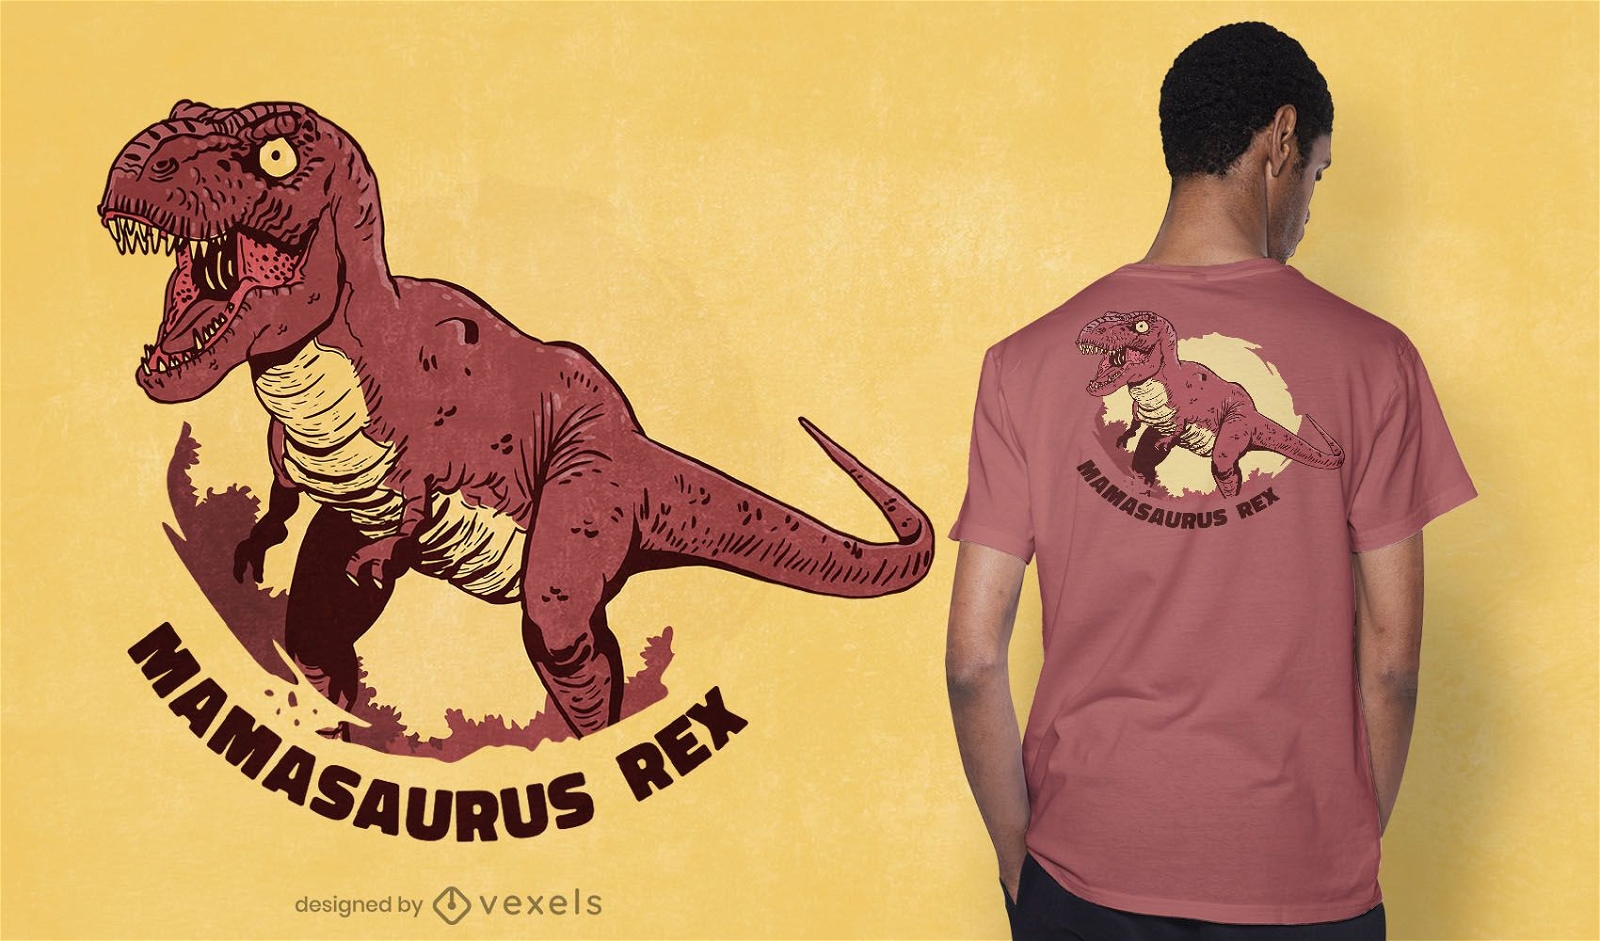 Mamasaurus rex t-shirt design